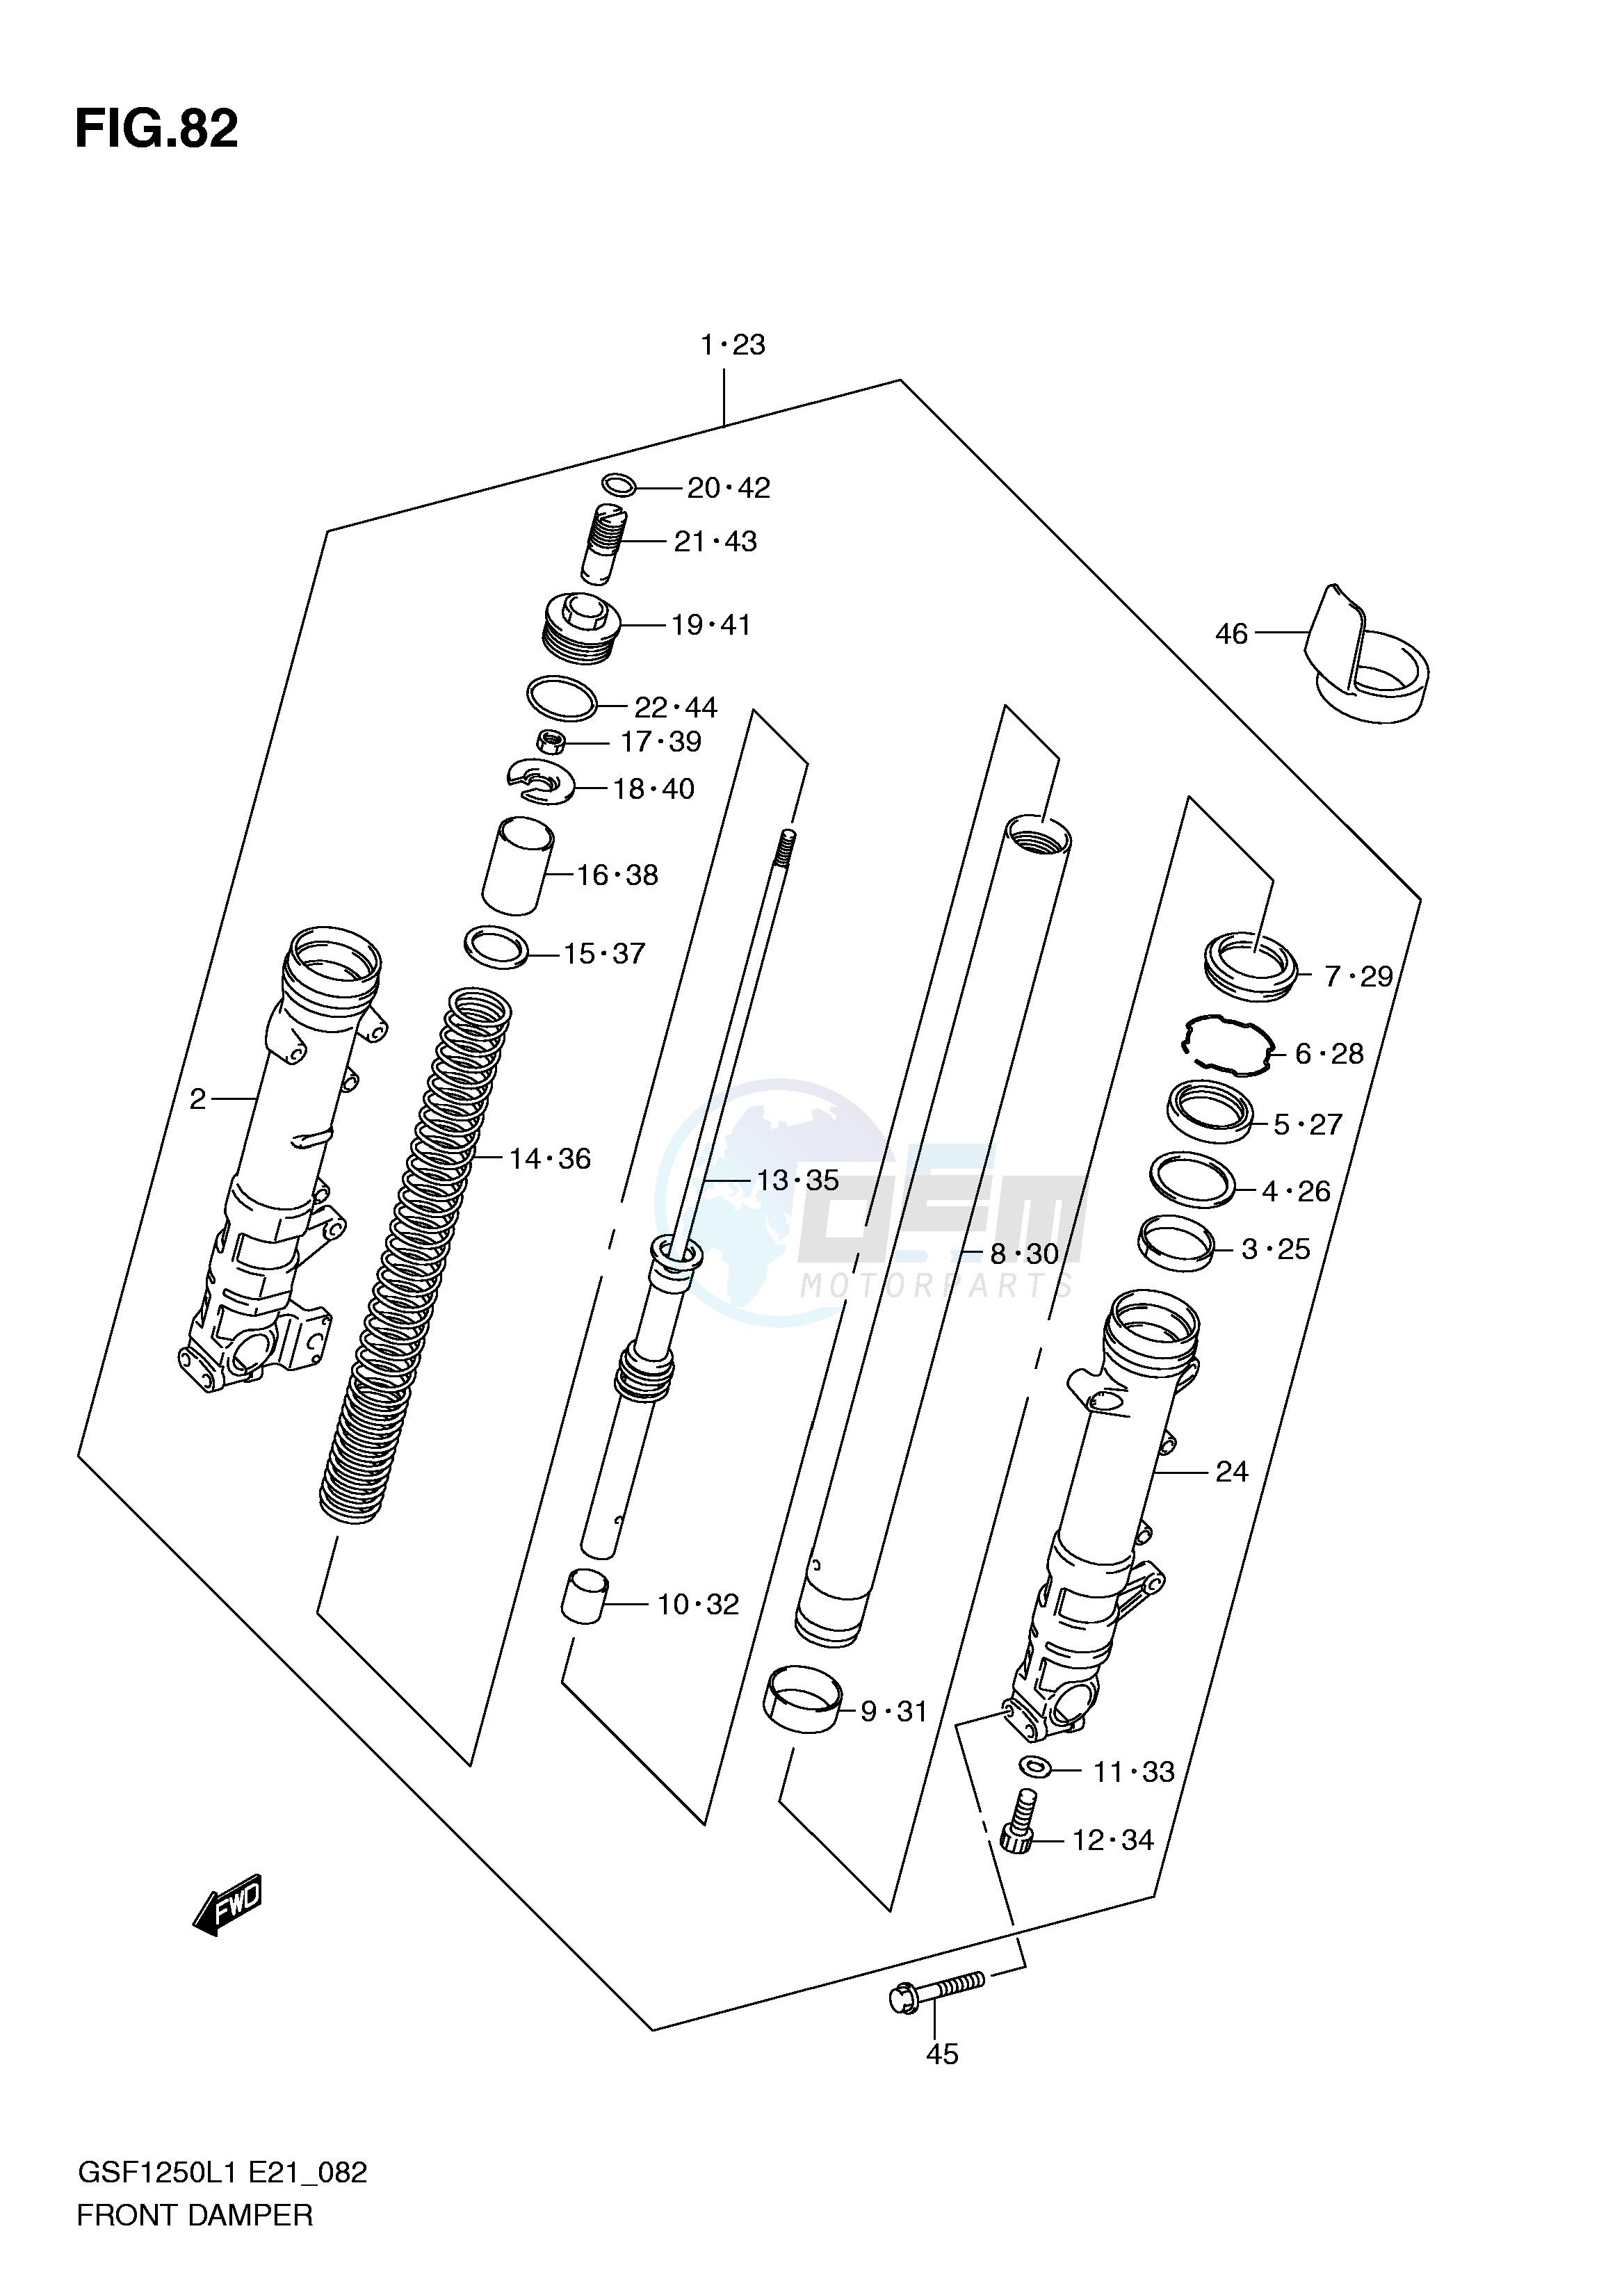 FRONT DAMPER (GSF1250AL1 E21) blueprint